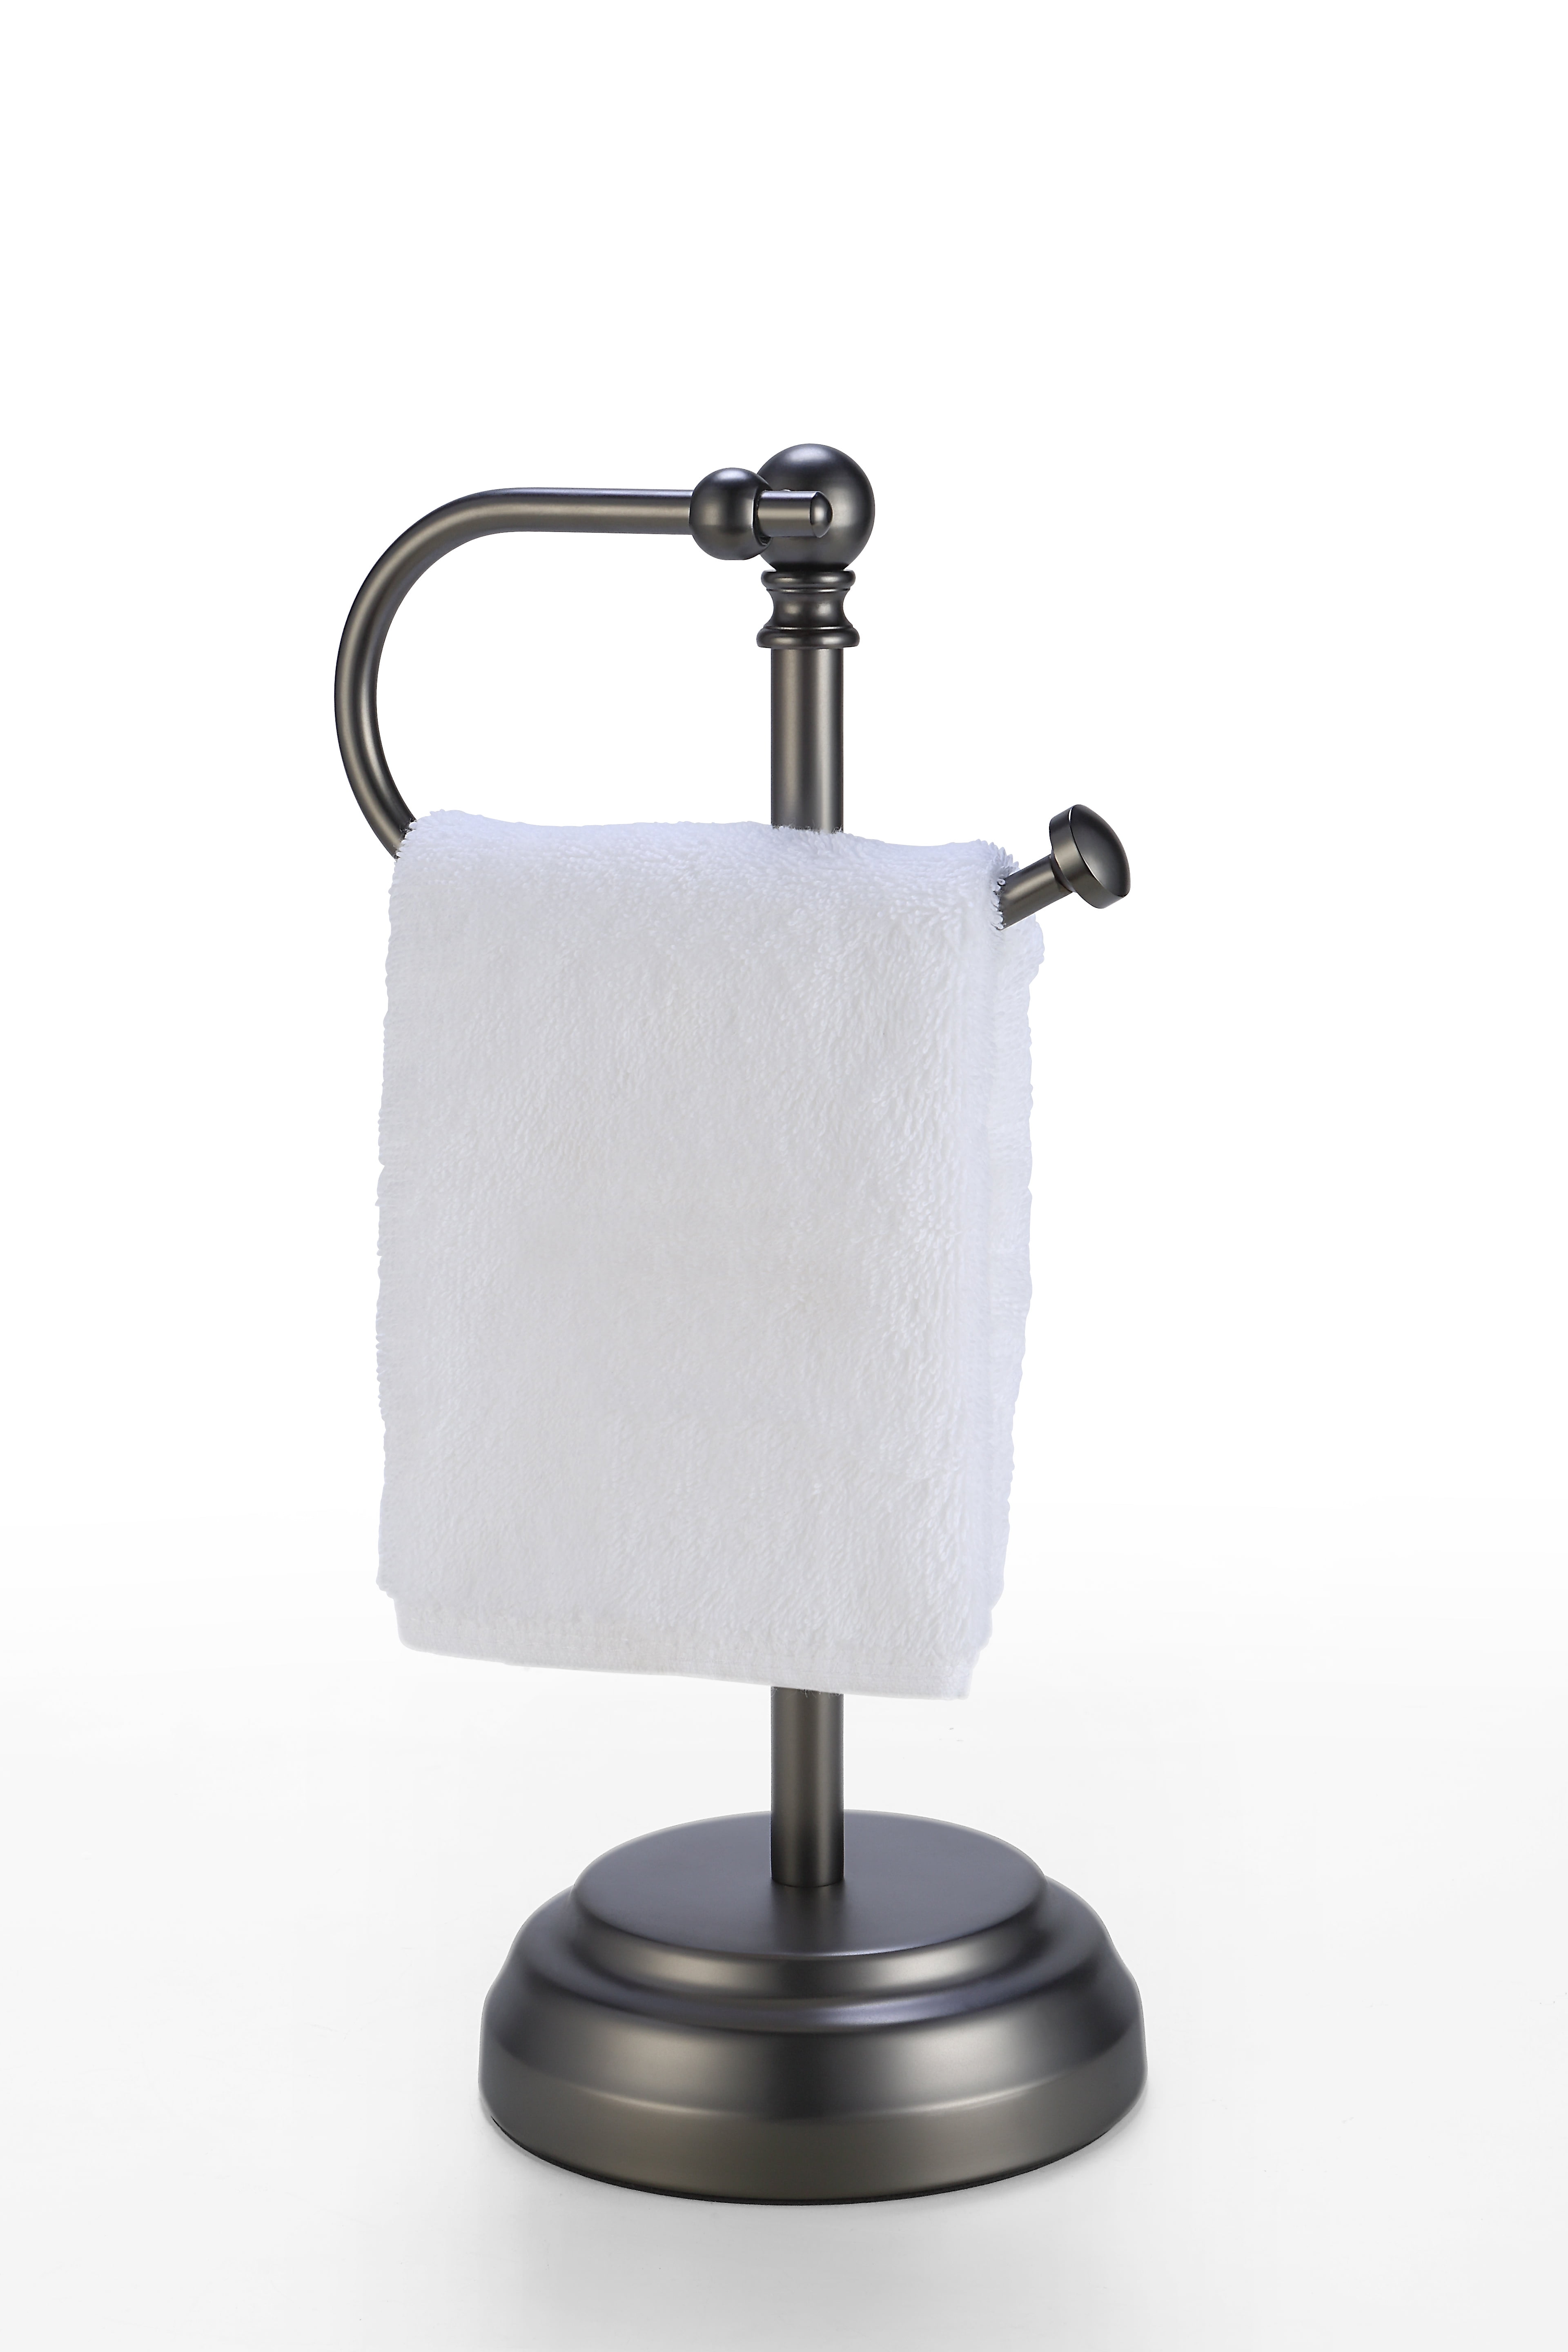 KSP Superior Upright Paper Towel Holder 18x35 cm (Black/St. Steel